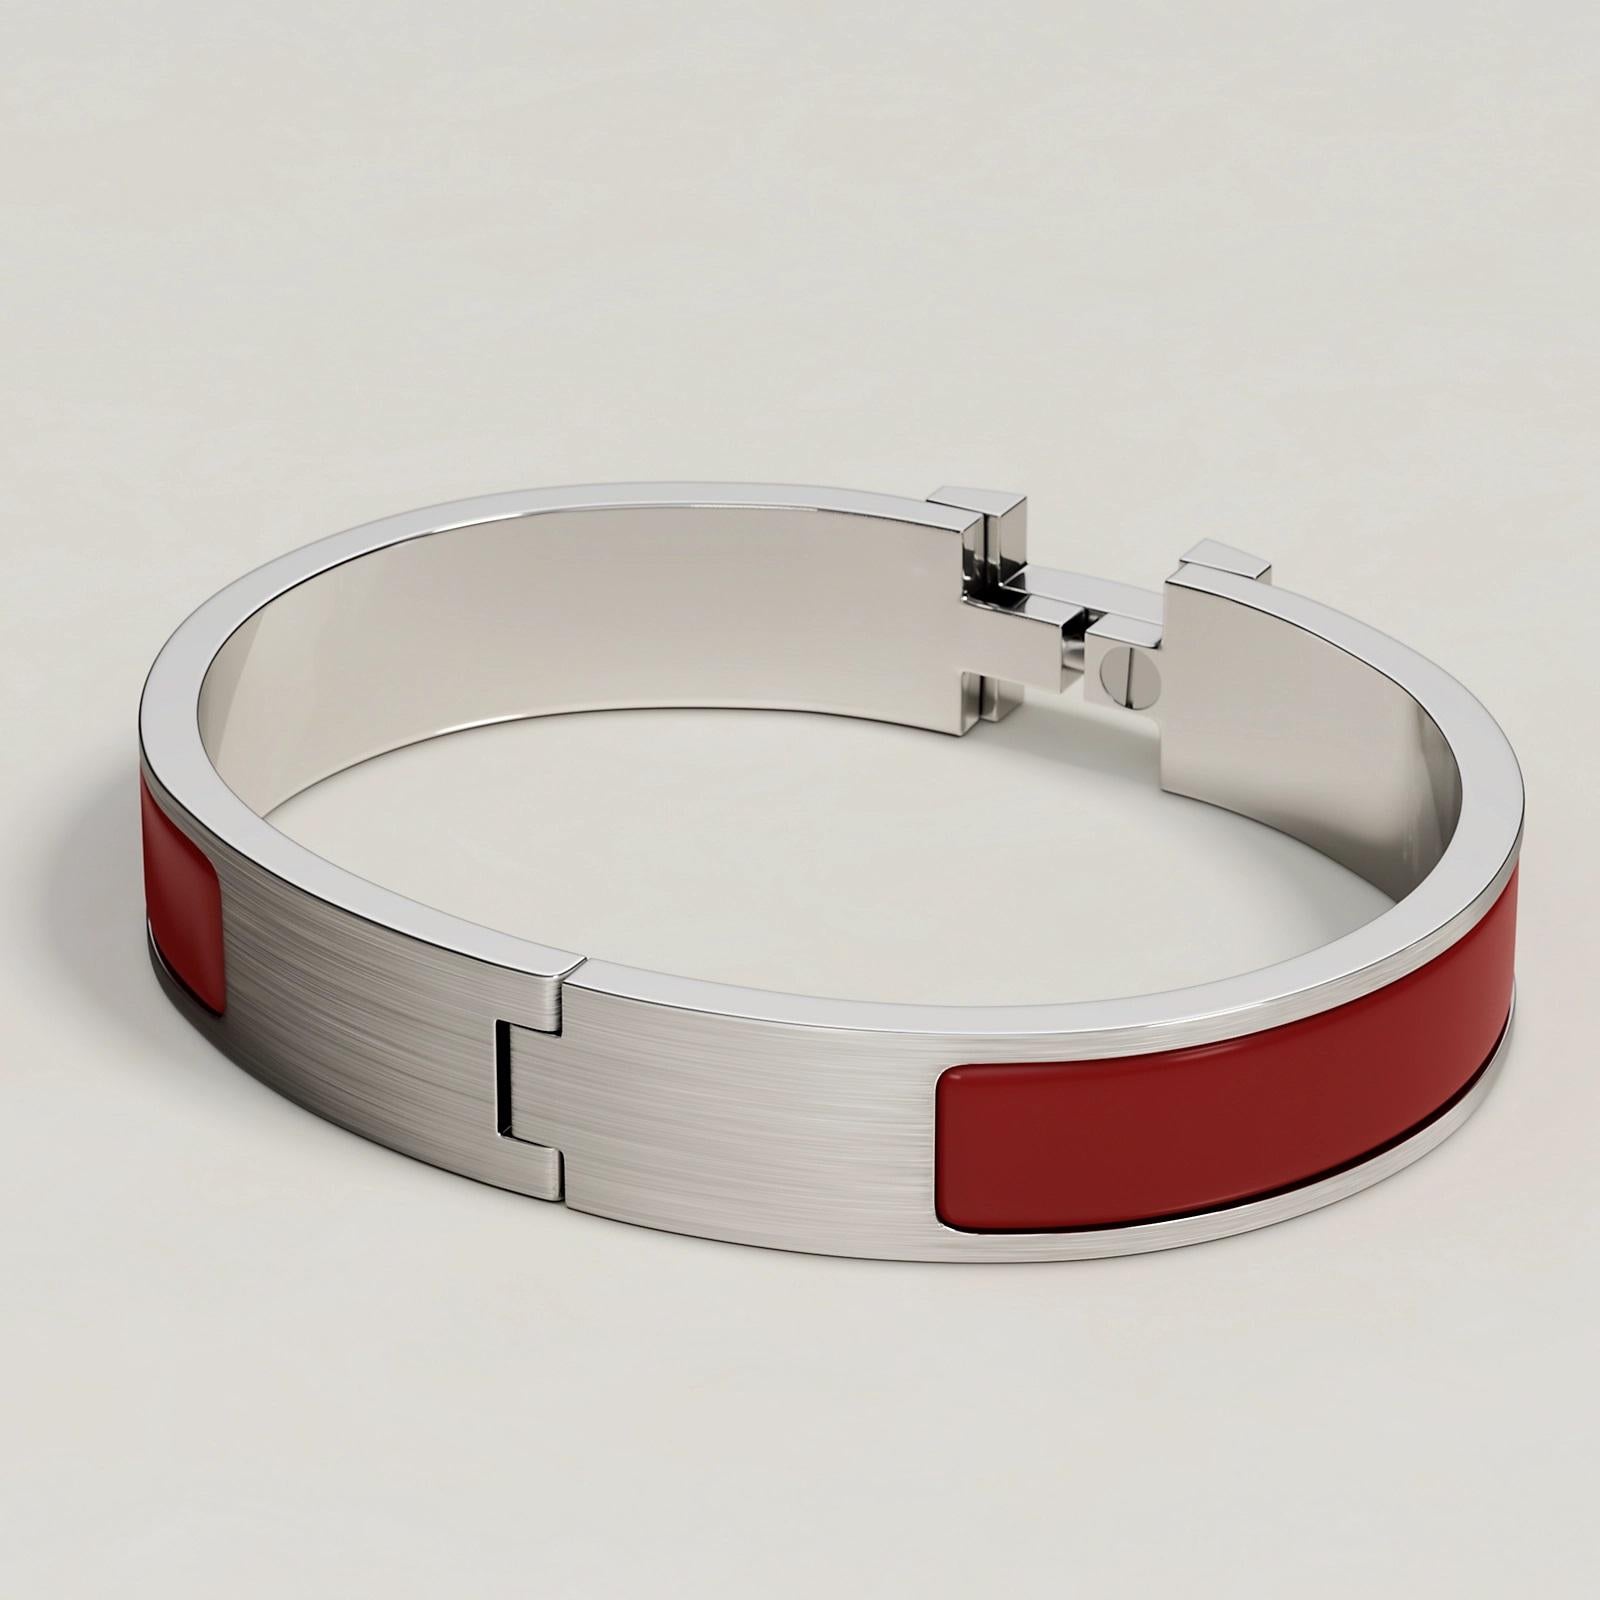 Color New Rouge H Mat Size T5 18.5CM
Bracelet étroit en émail mat avec des attaches en palladium brossé.
Taille du poignet : 18,5 cm environ  Largeur : 12 mm